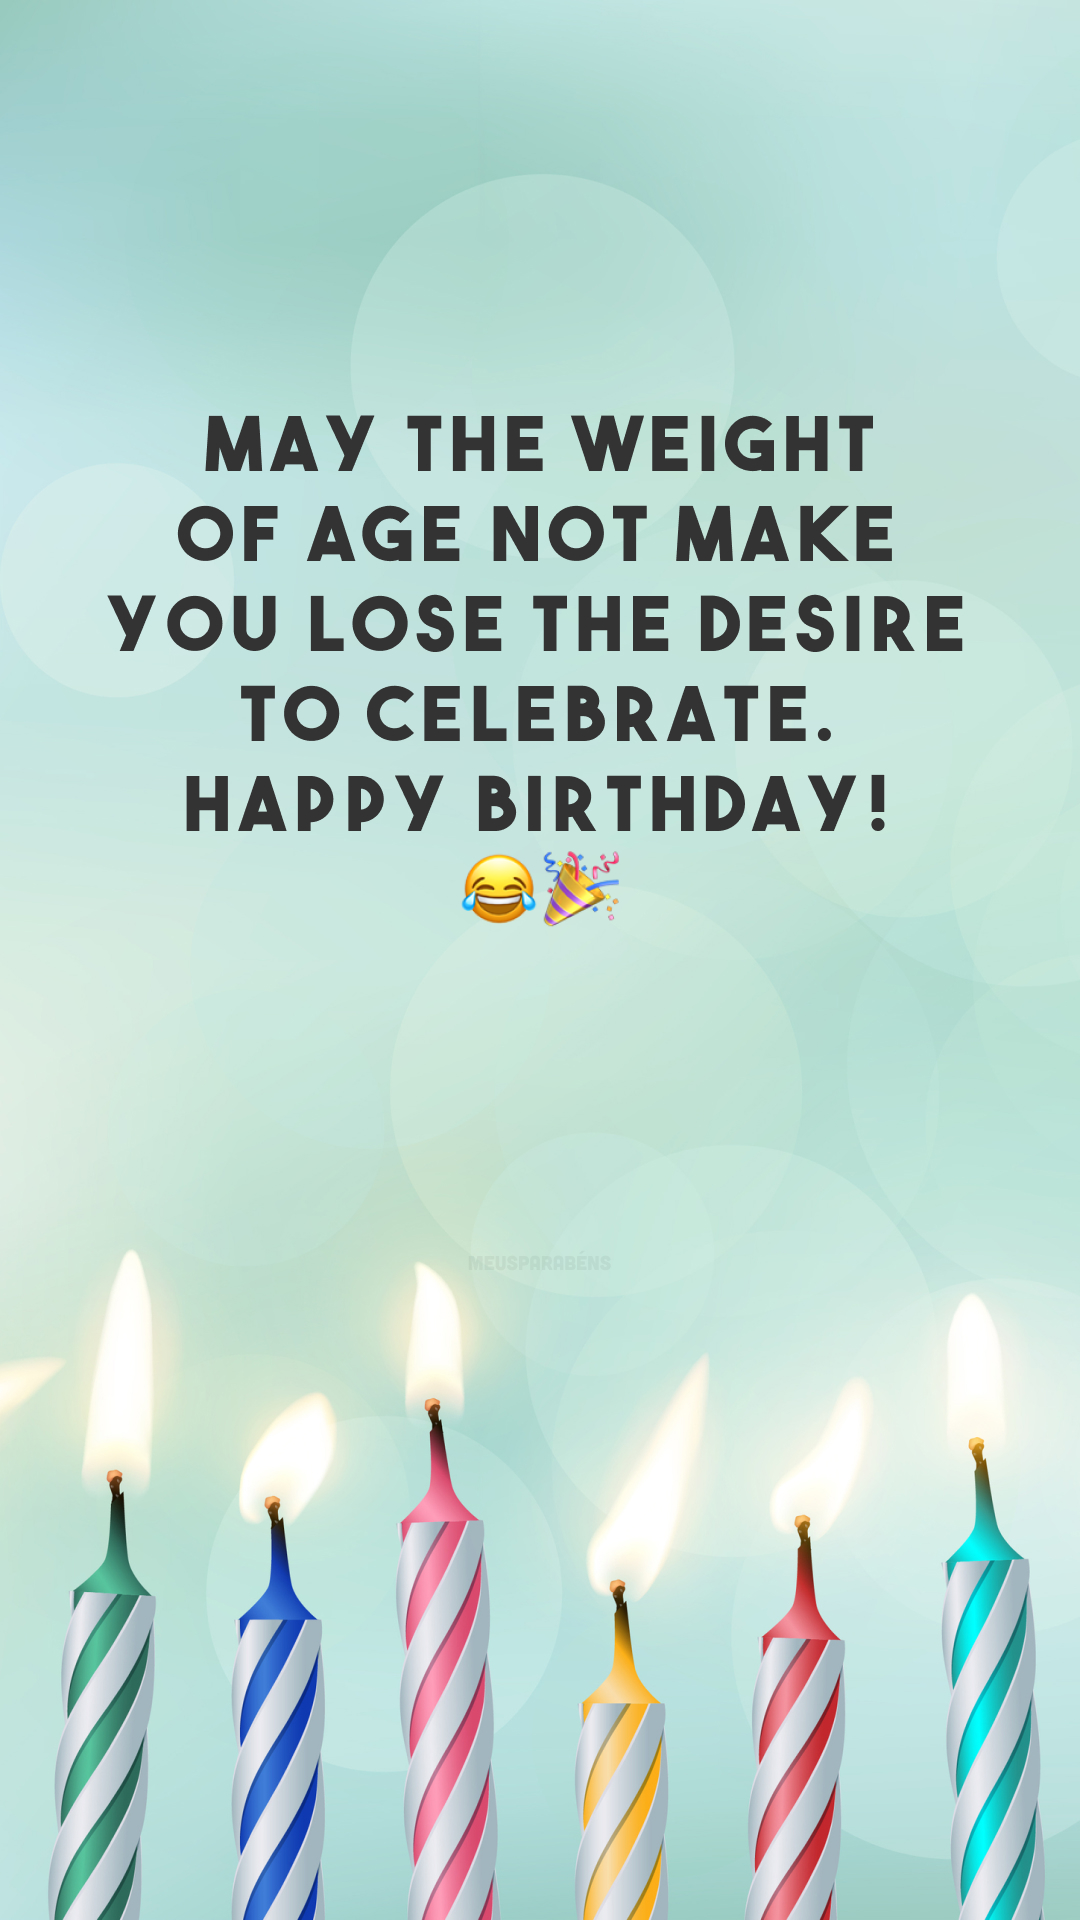 May the weight of age not make you lose the desire to celebrate. Happy birthday! 😂🎉
(Que o peso da idade não te faça perder a vontade de comemorar. Feliz aniversário!)